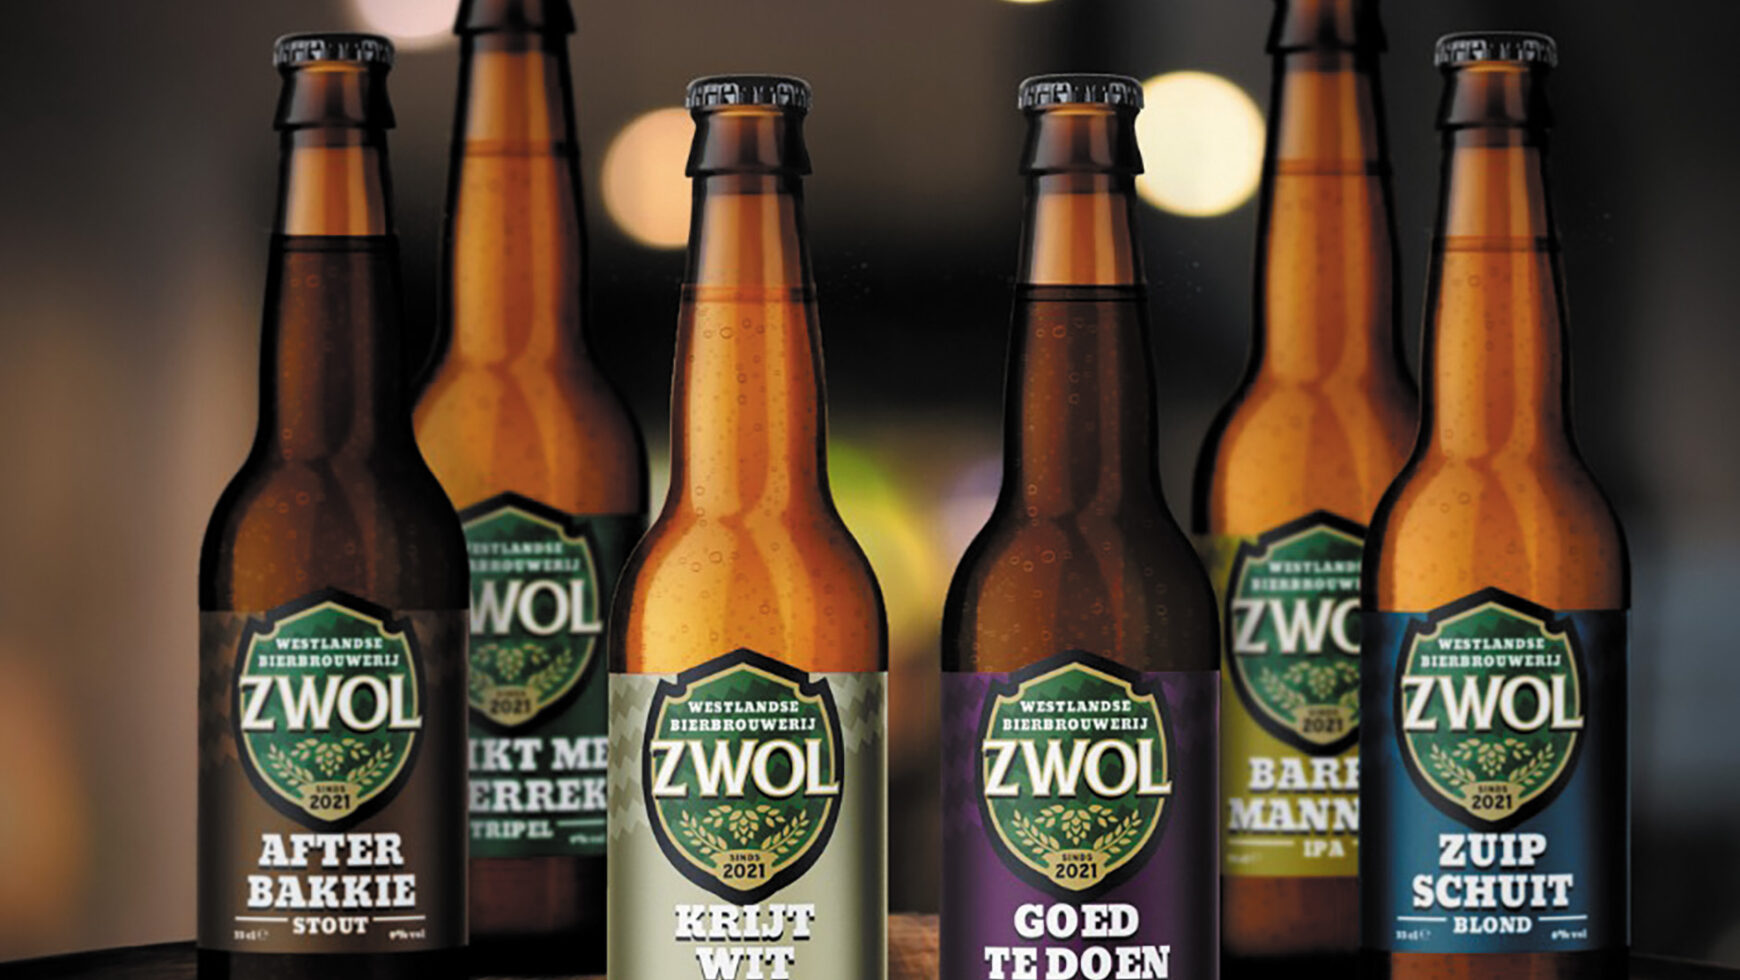 Regio nieuws: Westlandse Bierbrouwerij ZWOL brengt Krijtwit uit